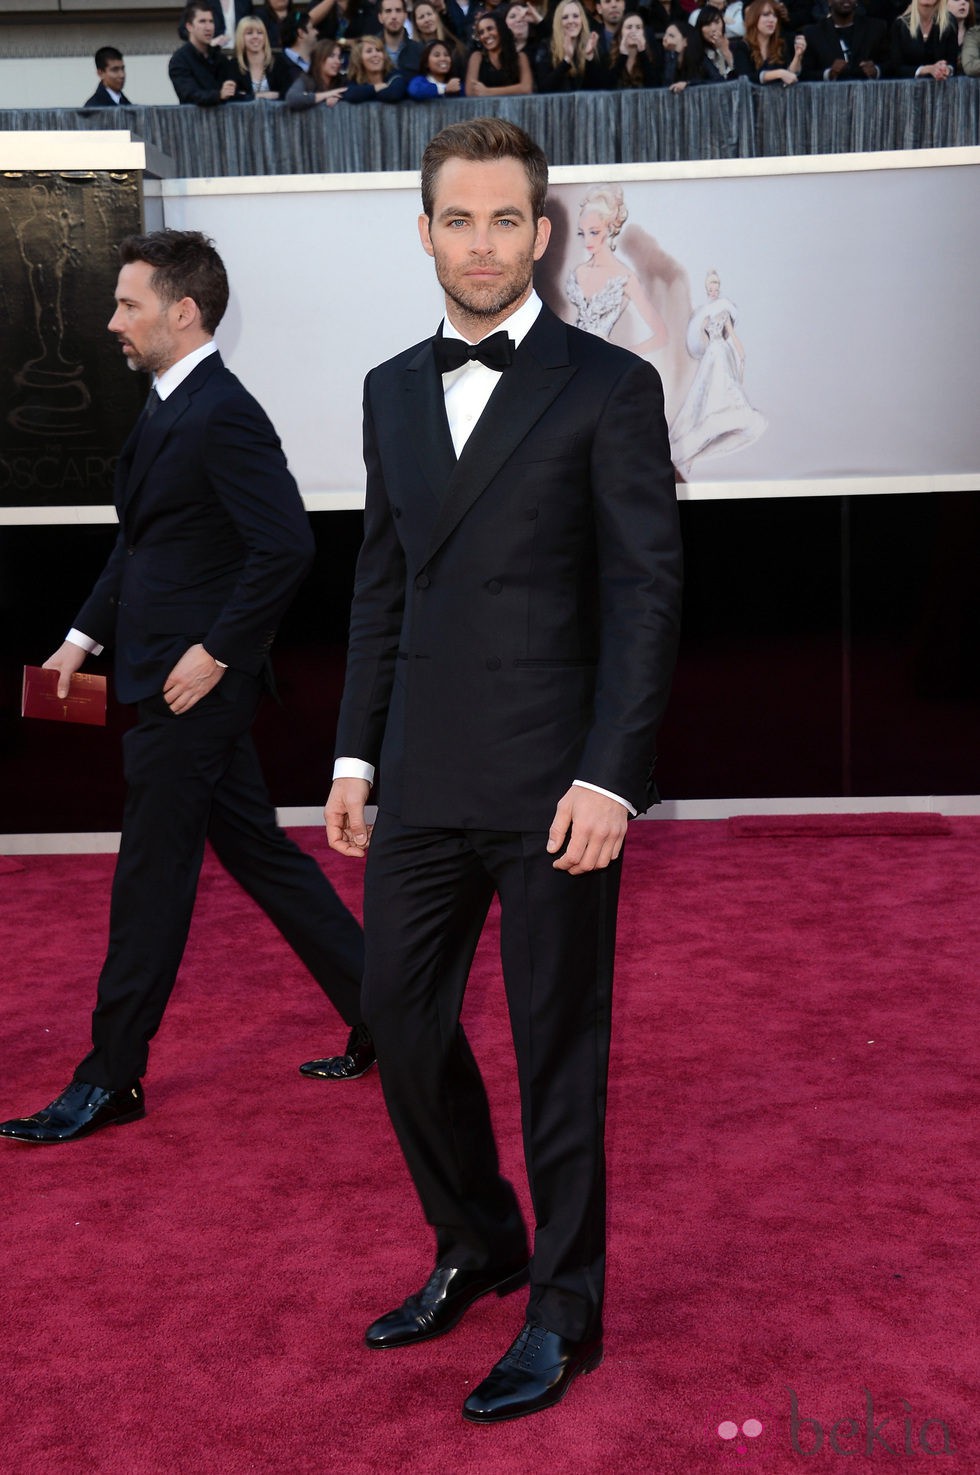 Chris Pine en la alfombra roja de los Oscar 2013